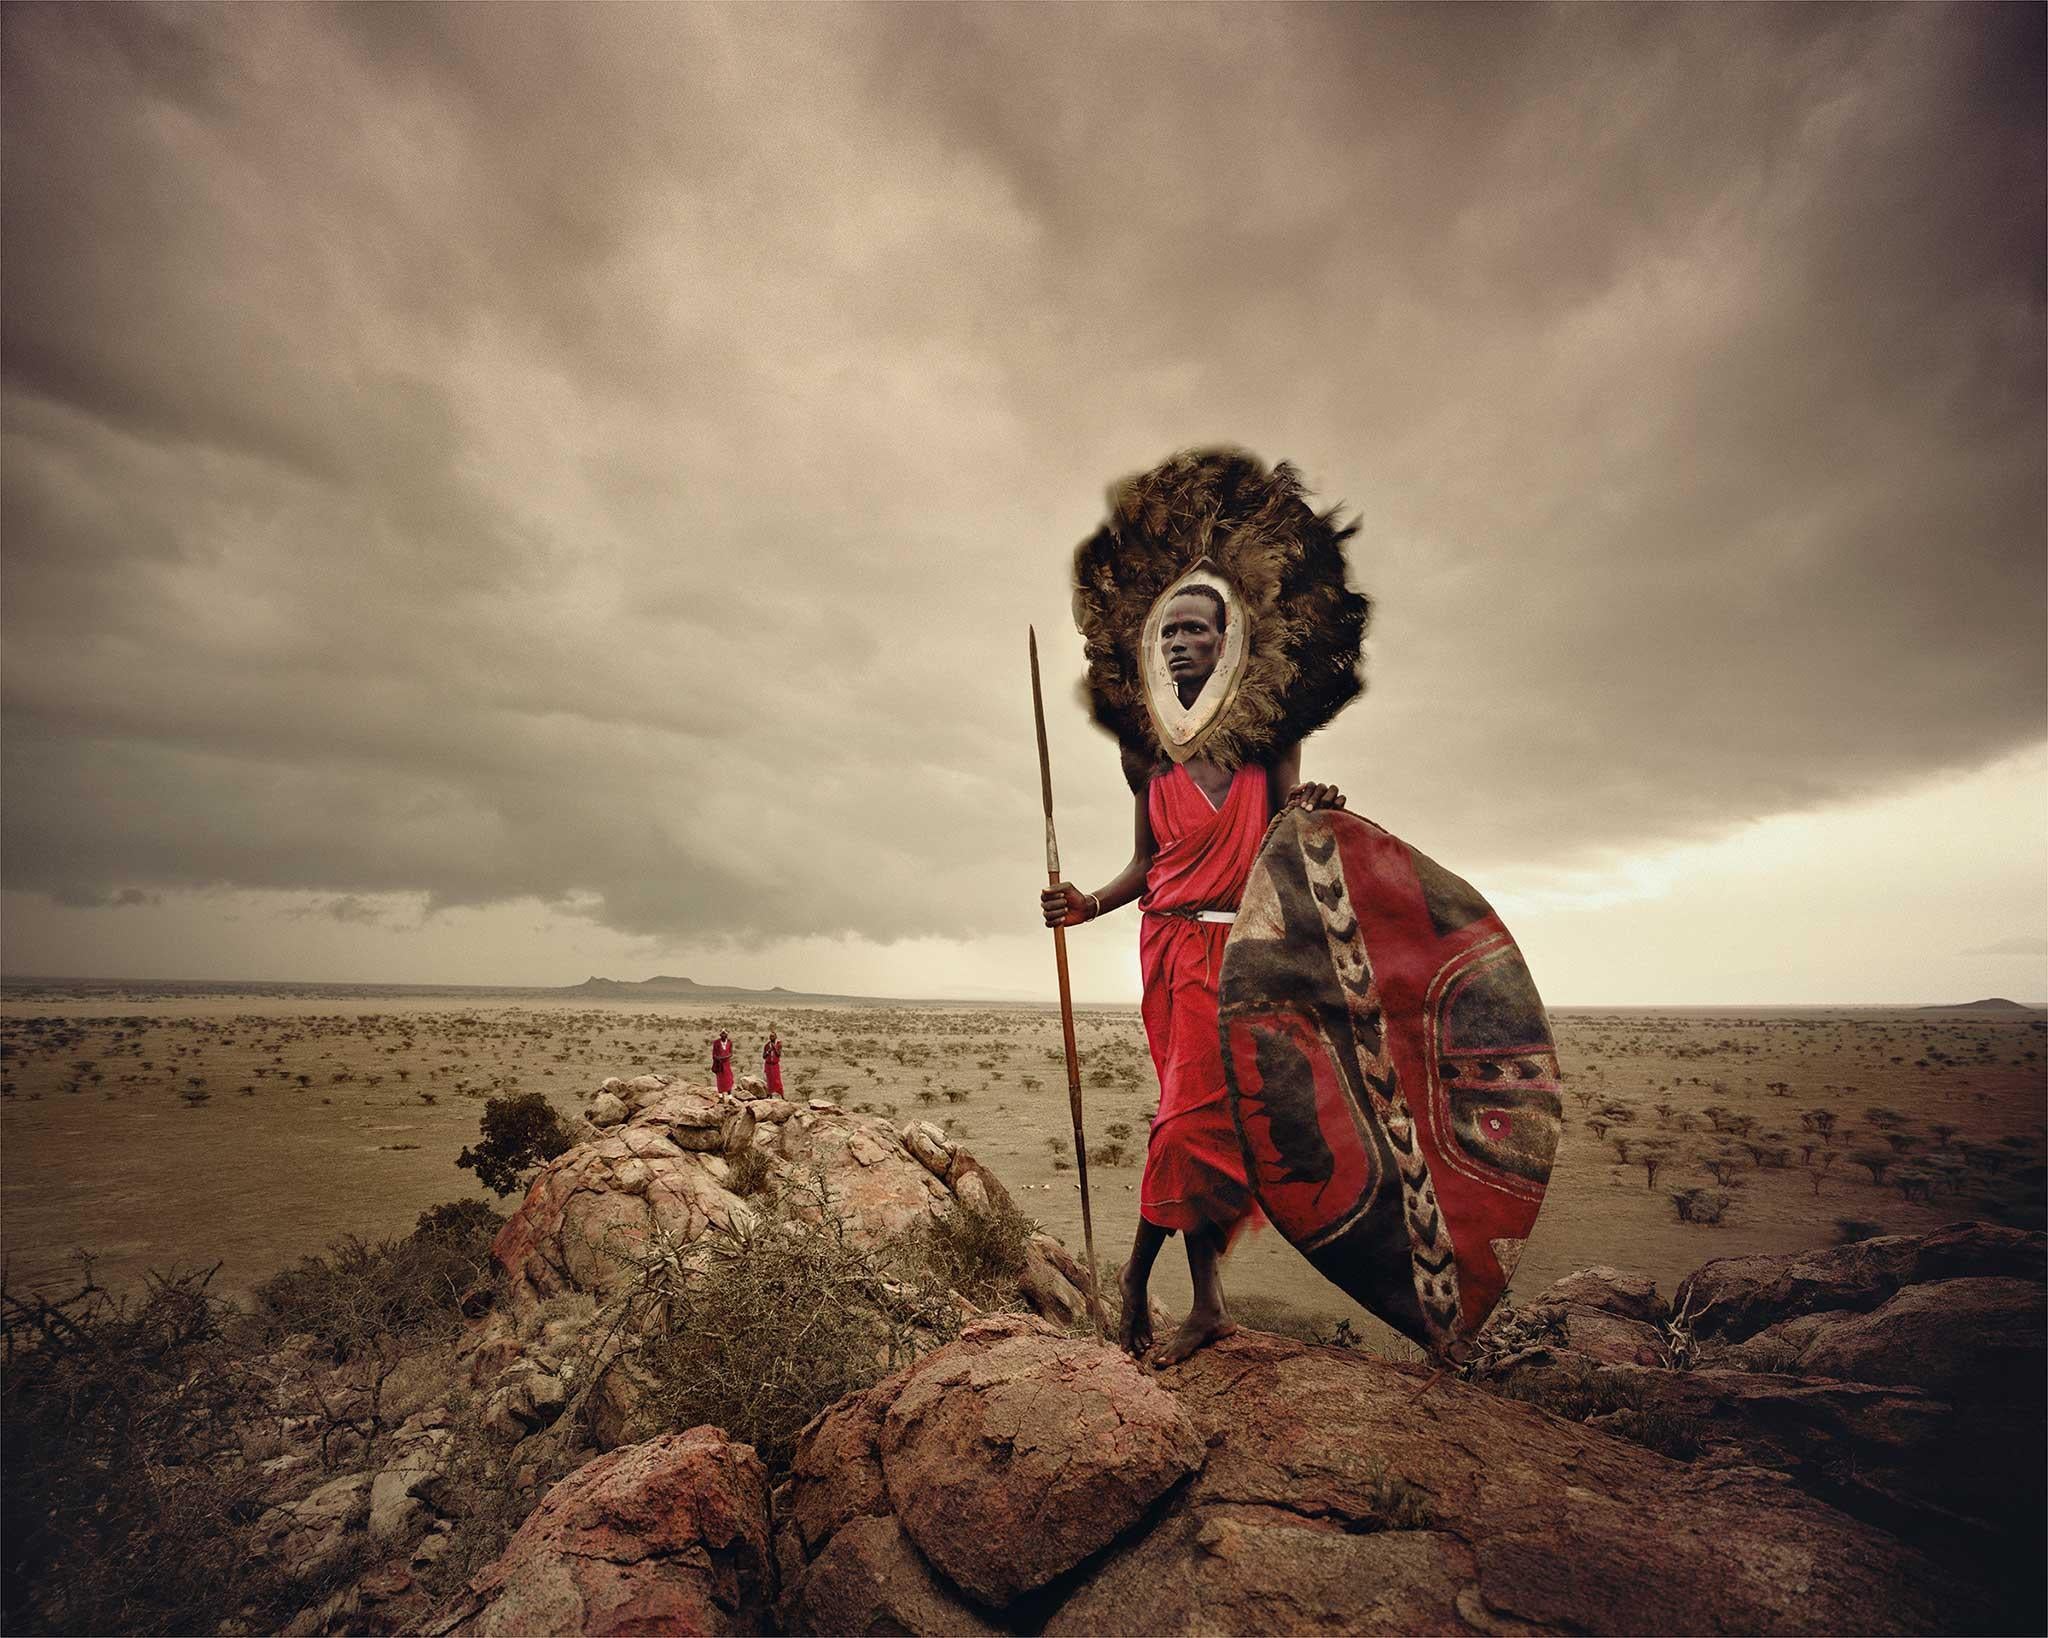 VIII 477 Sarbore, Tanzanie, 2010

Lorsque les Masaïs ont migré du Soudan au XVe siècle, ils ont attaqué les groupes indigènes qu'ils rencontraient sur leur chemin et ont pillé le bétail. À la fin de leur périple, ils s'étaient emparés de la